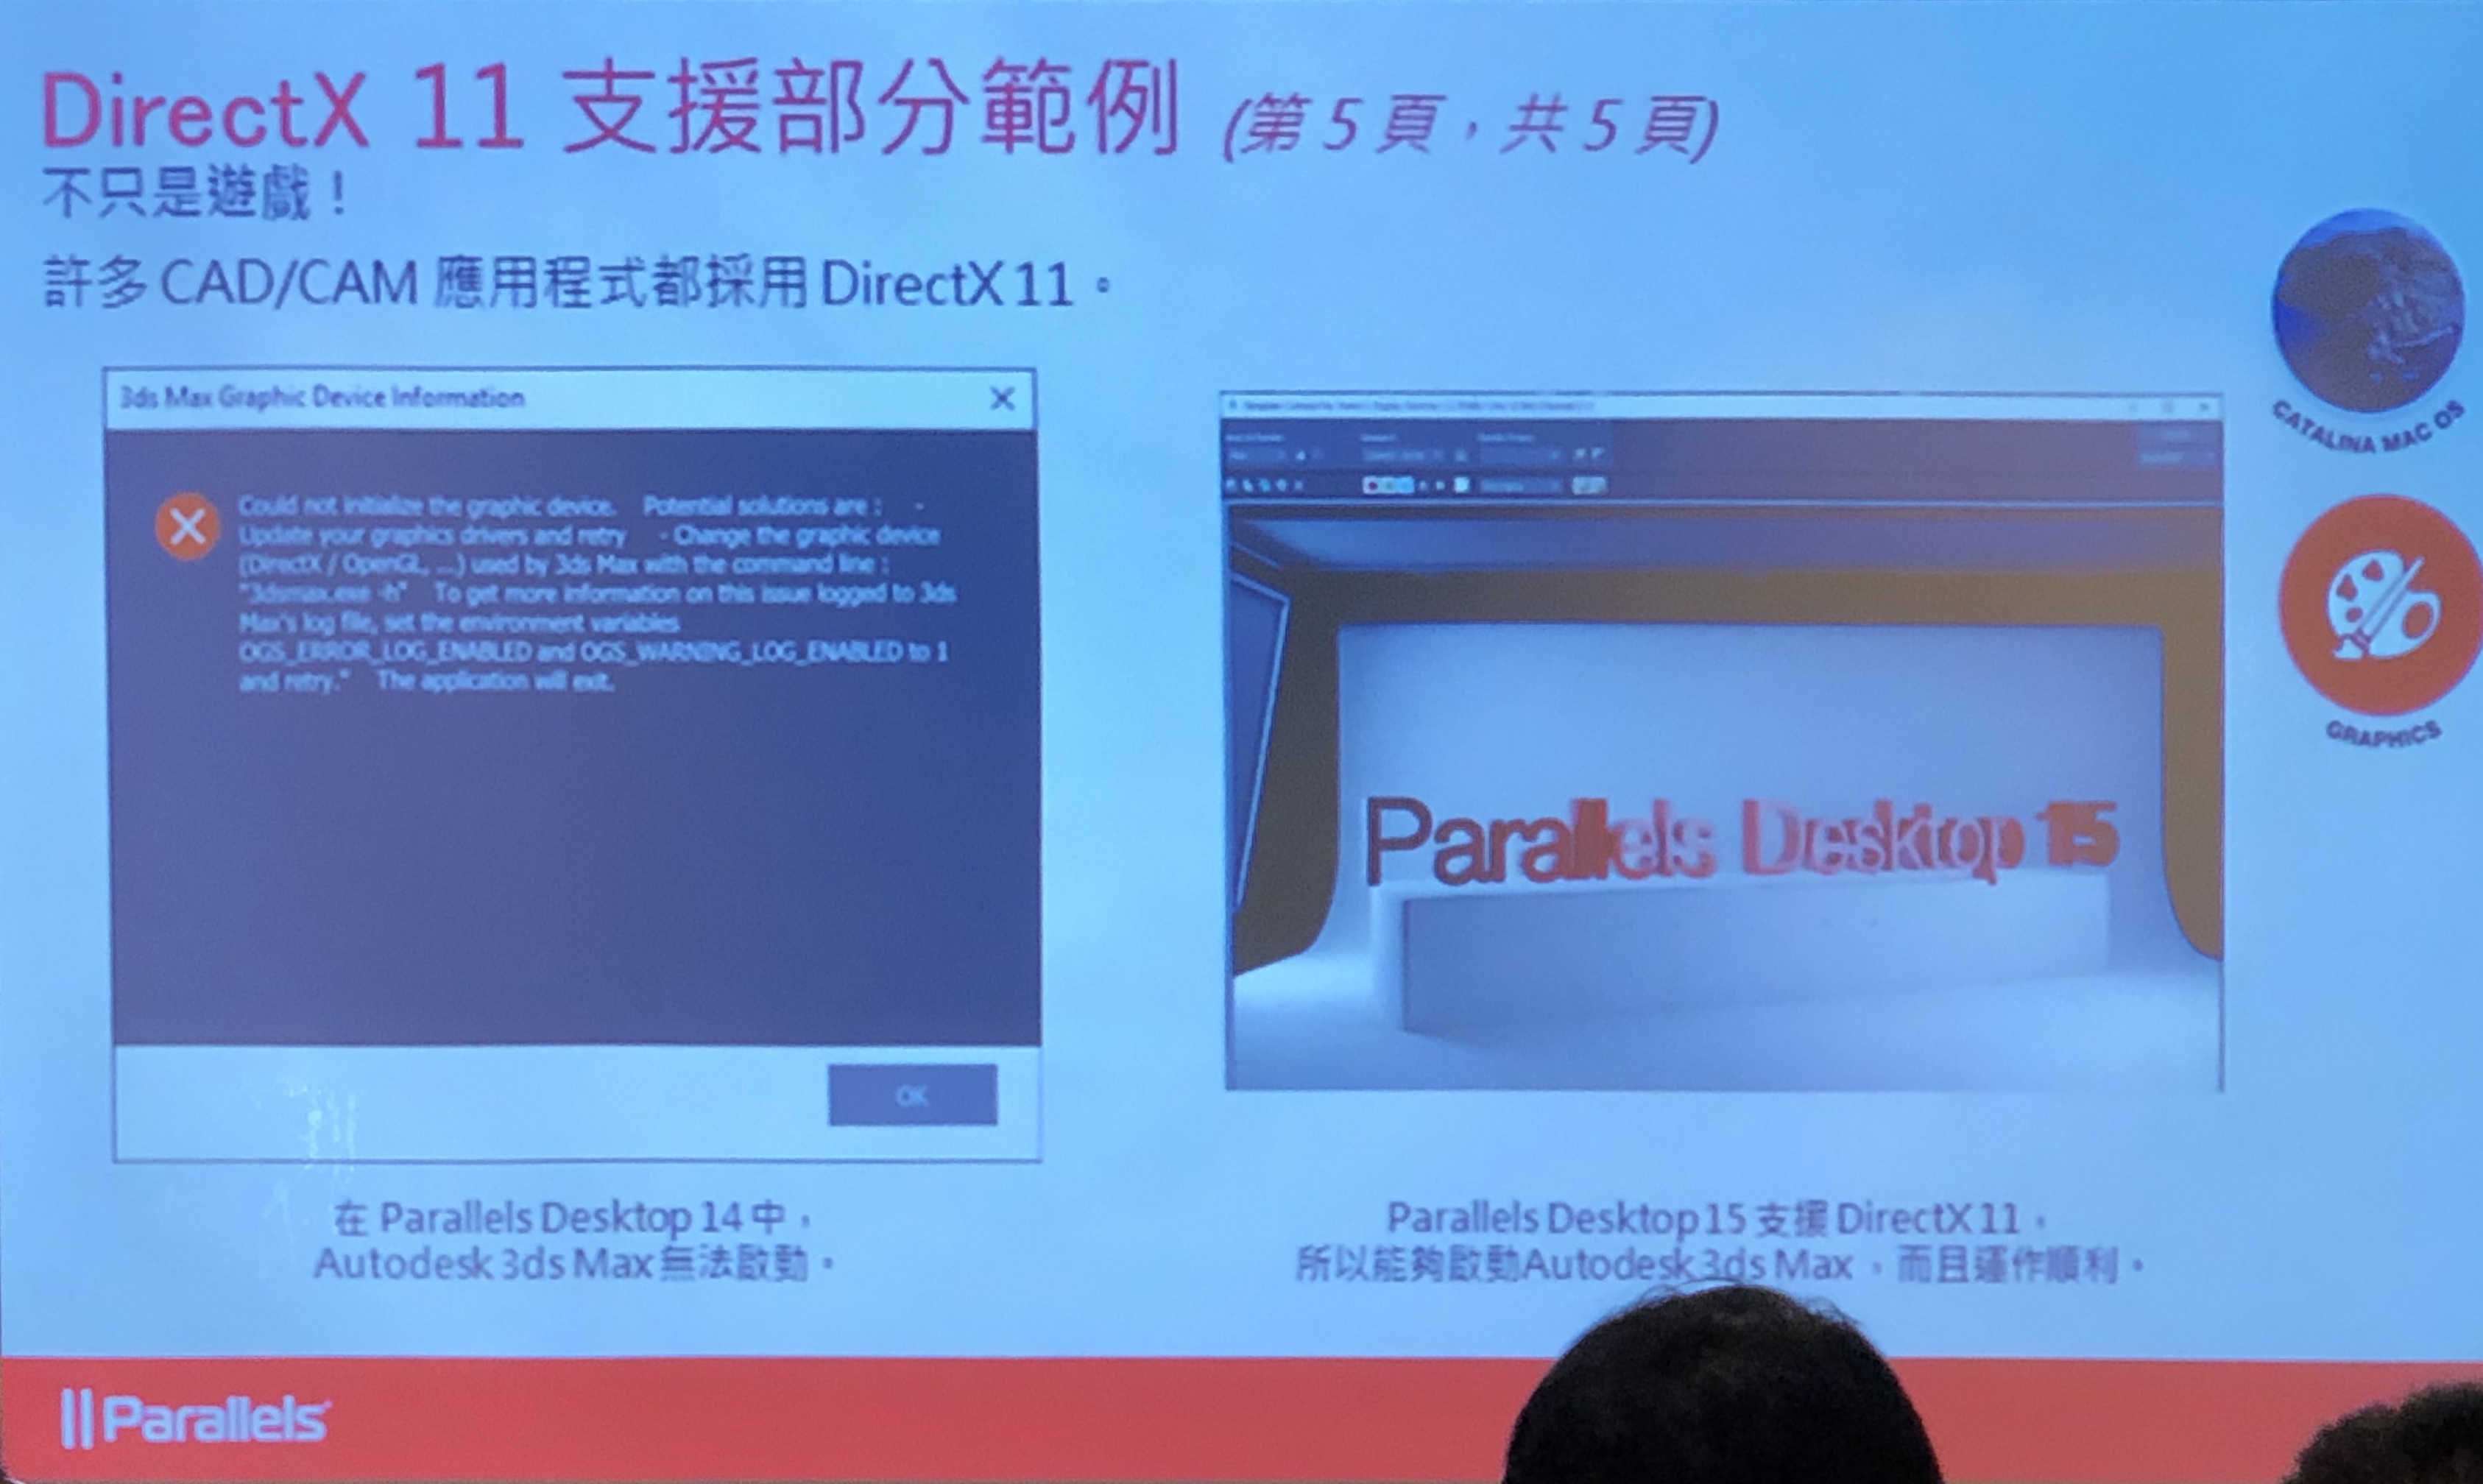 Parallels Desktop 15